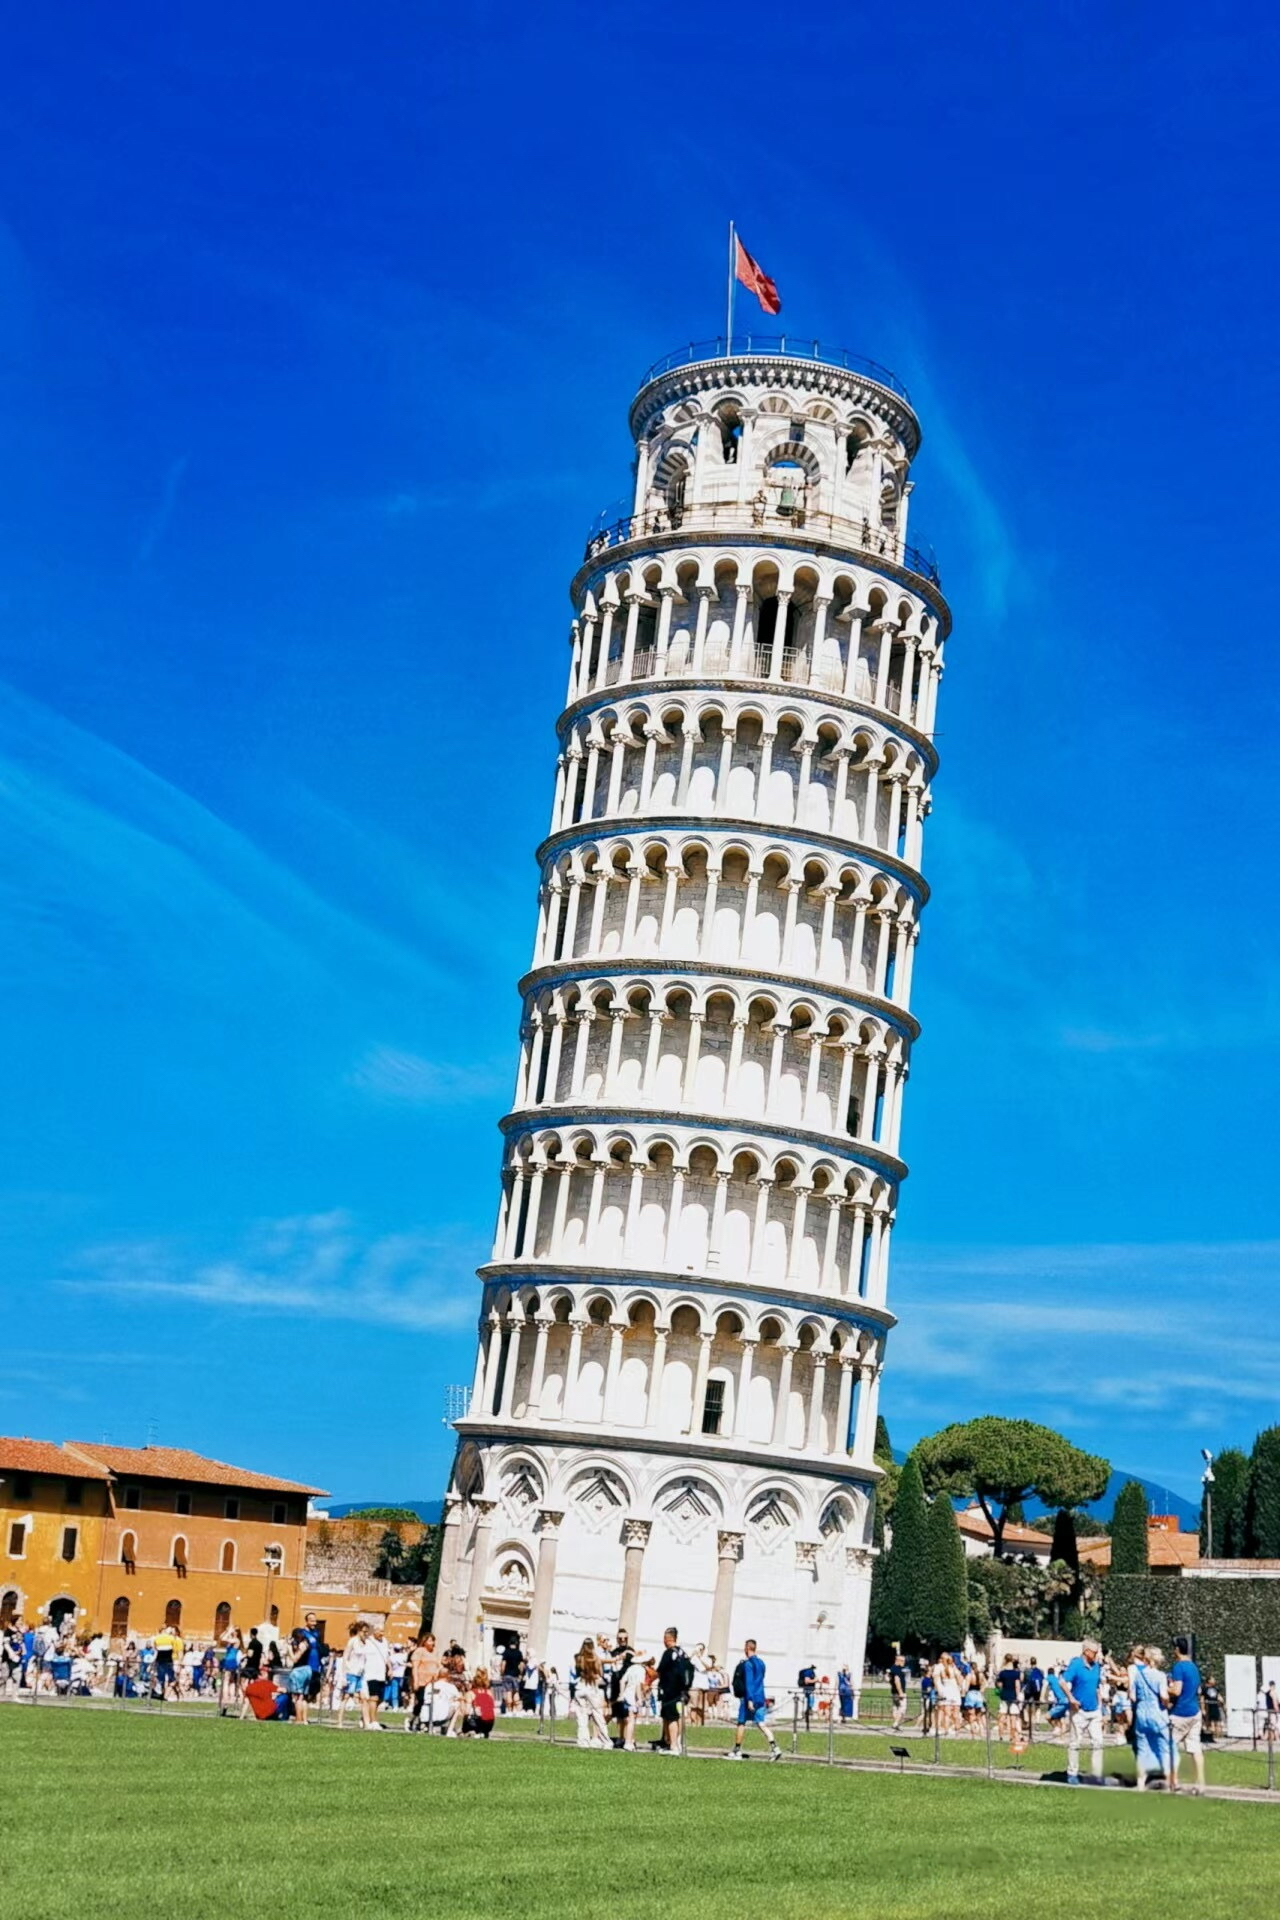 罗马的标志性建筑之一——比萨斜塔，是意大利的骄傲。这座塔倾斜着矗立在罗马市中心，虽然它有些倾斜，但却